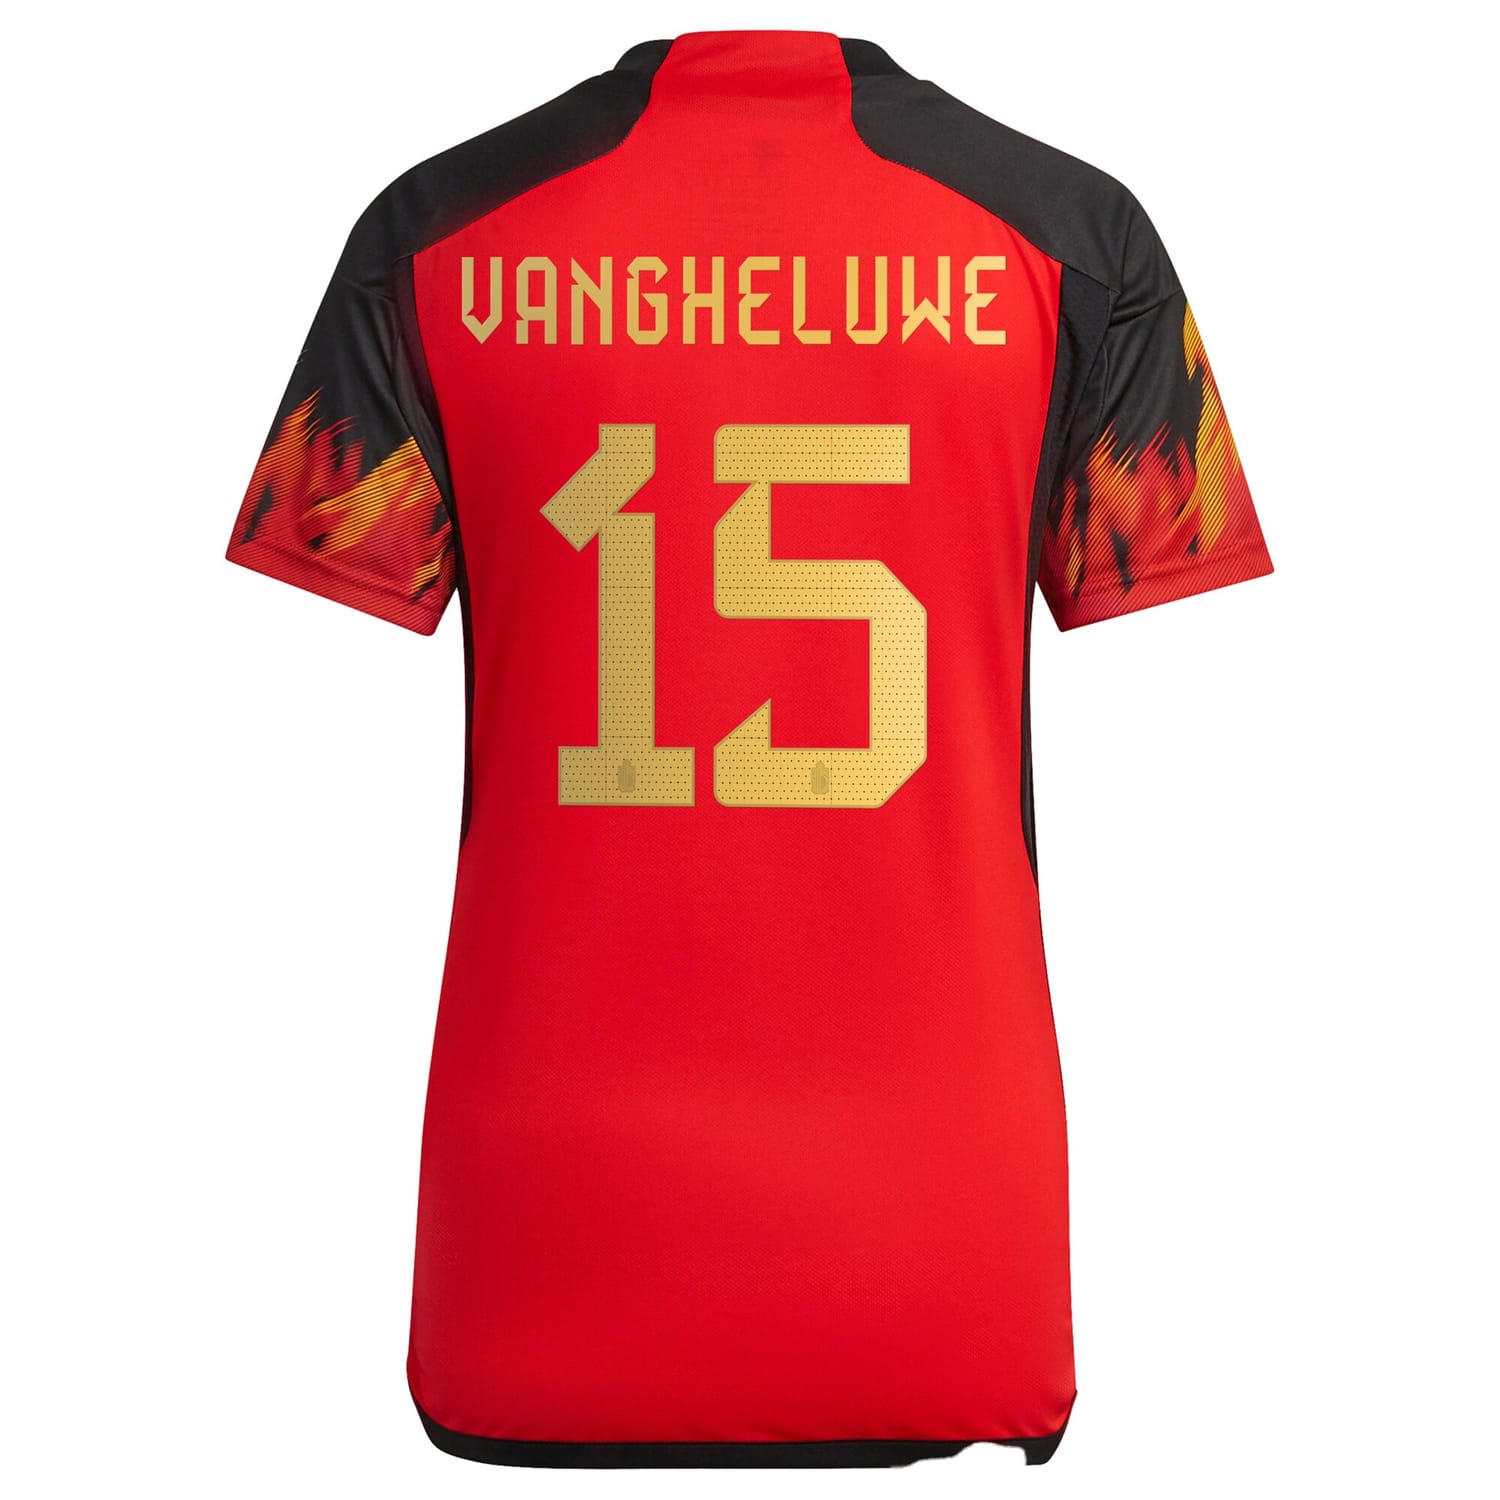 Belgium National Team Home Jersey Shirt 2022 player Jody Vangheluwe 15 printing for Women